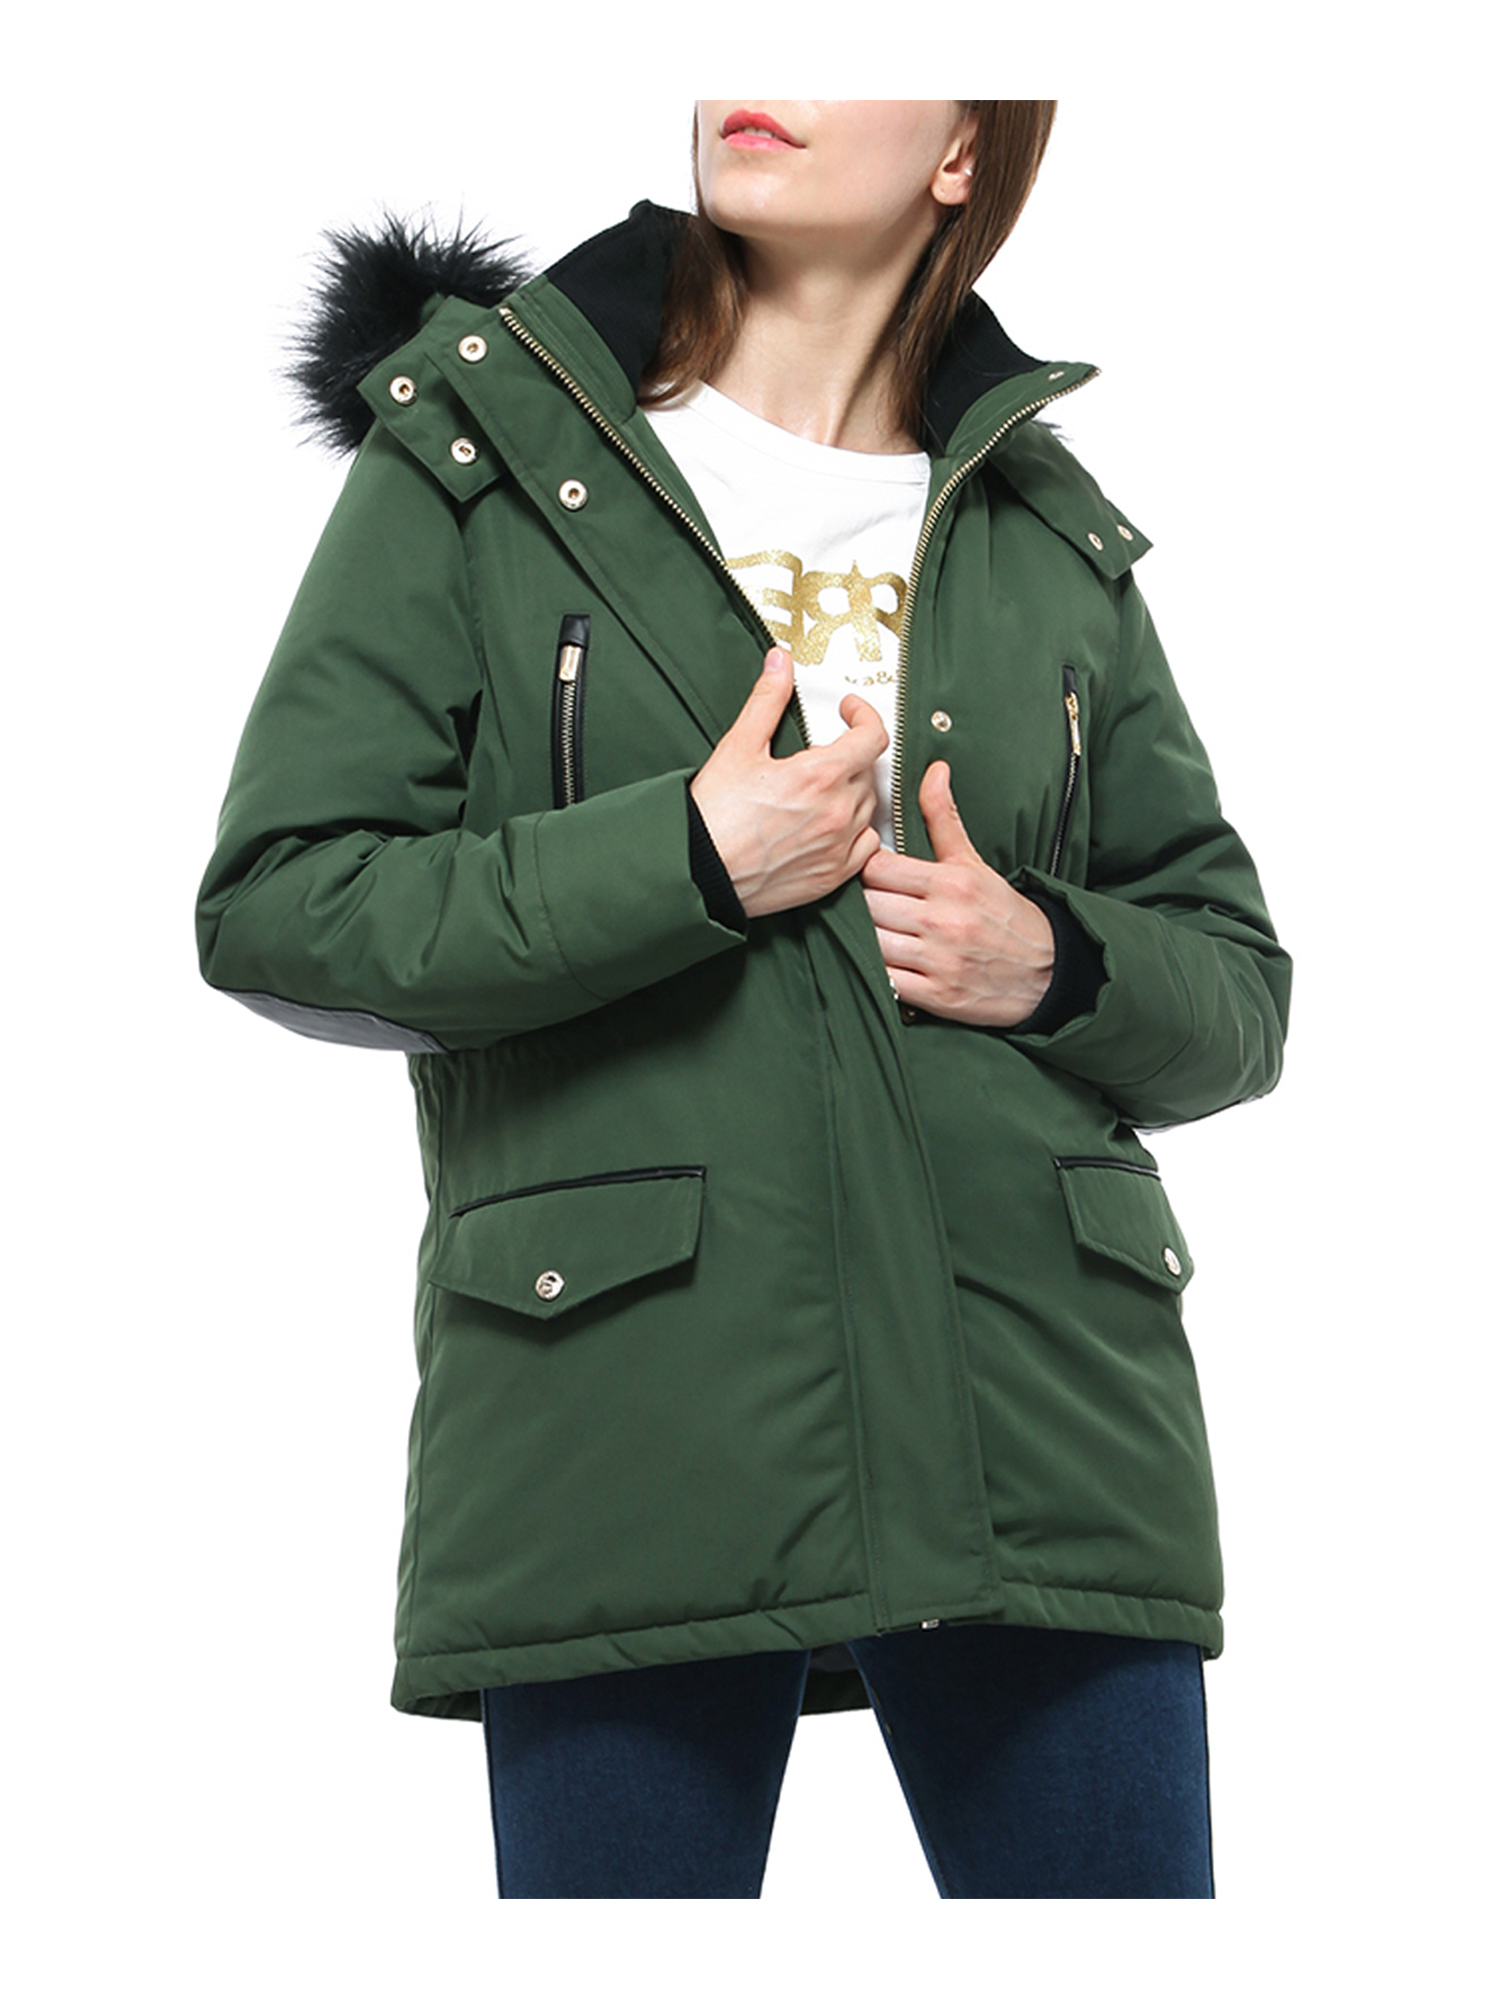 Rokka&Rolla Women's Winter Coat with Faux Shearling Hood Parka Jacket - image 1 of 8